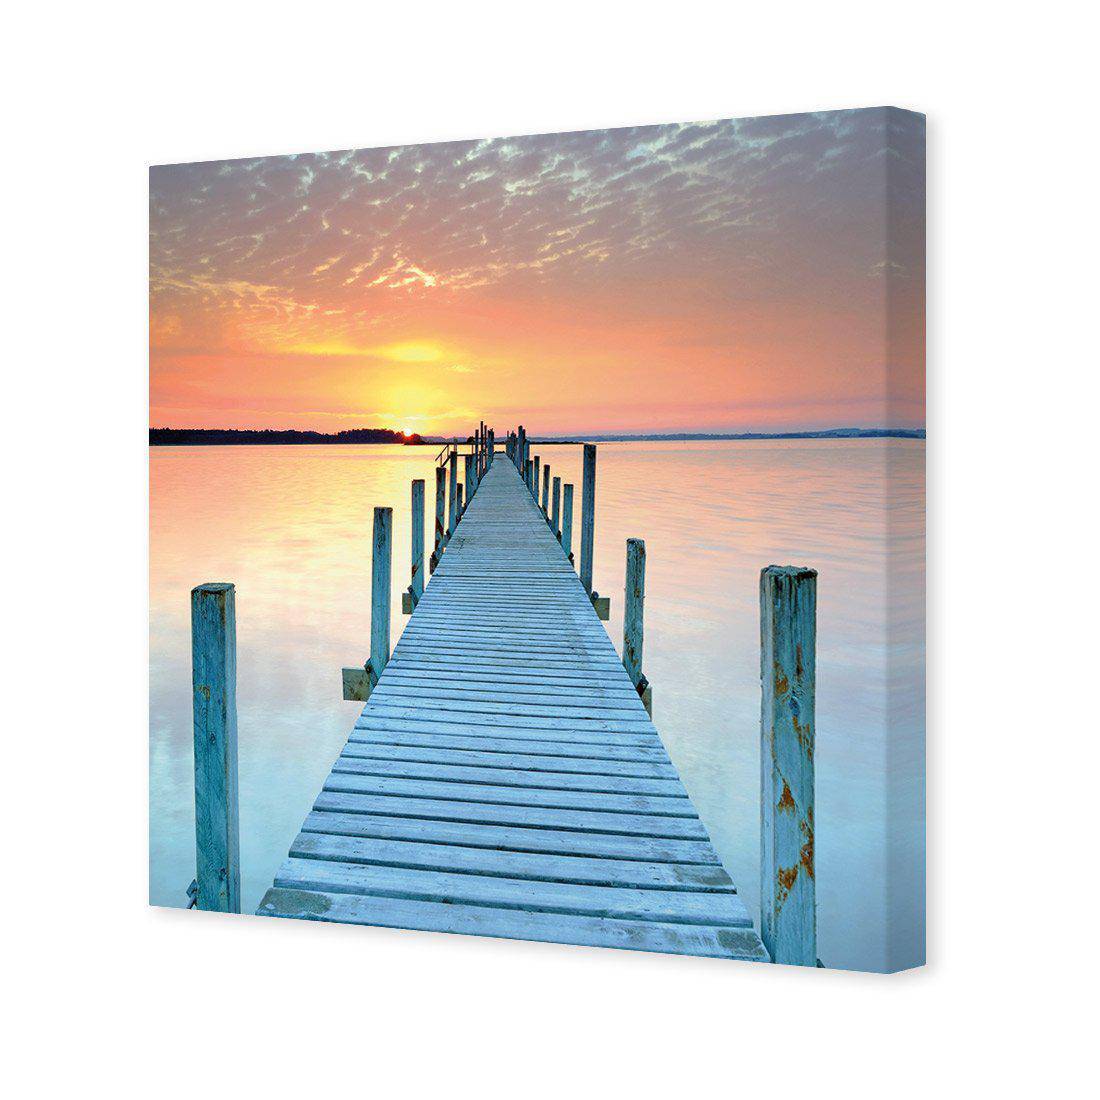 Sunset Pier Canvas Art-Canvas-Wall Art Designs-30x30cm-Canvas - No Frame-Wall Art Designs